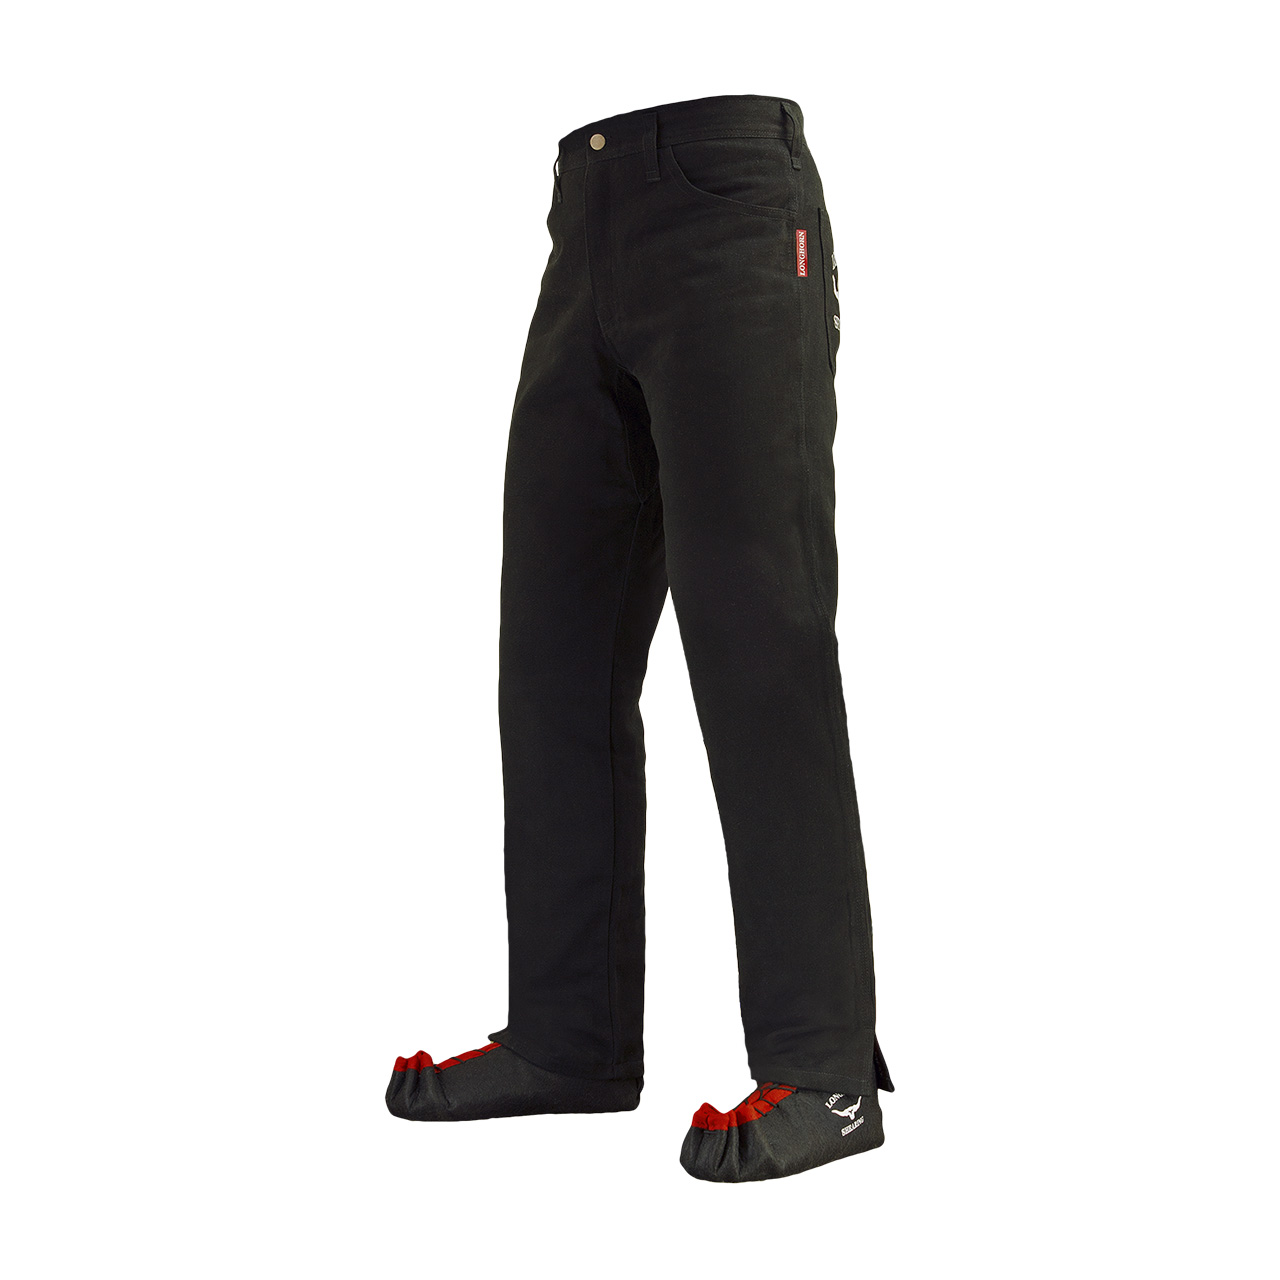 Longhorn™ kalhoty pro střihače ovcí s 2 předními kapsami velikost Stout 40/31 (6 1/4)